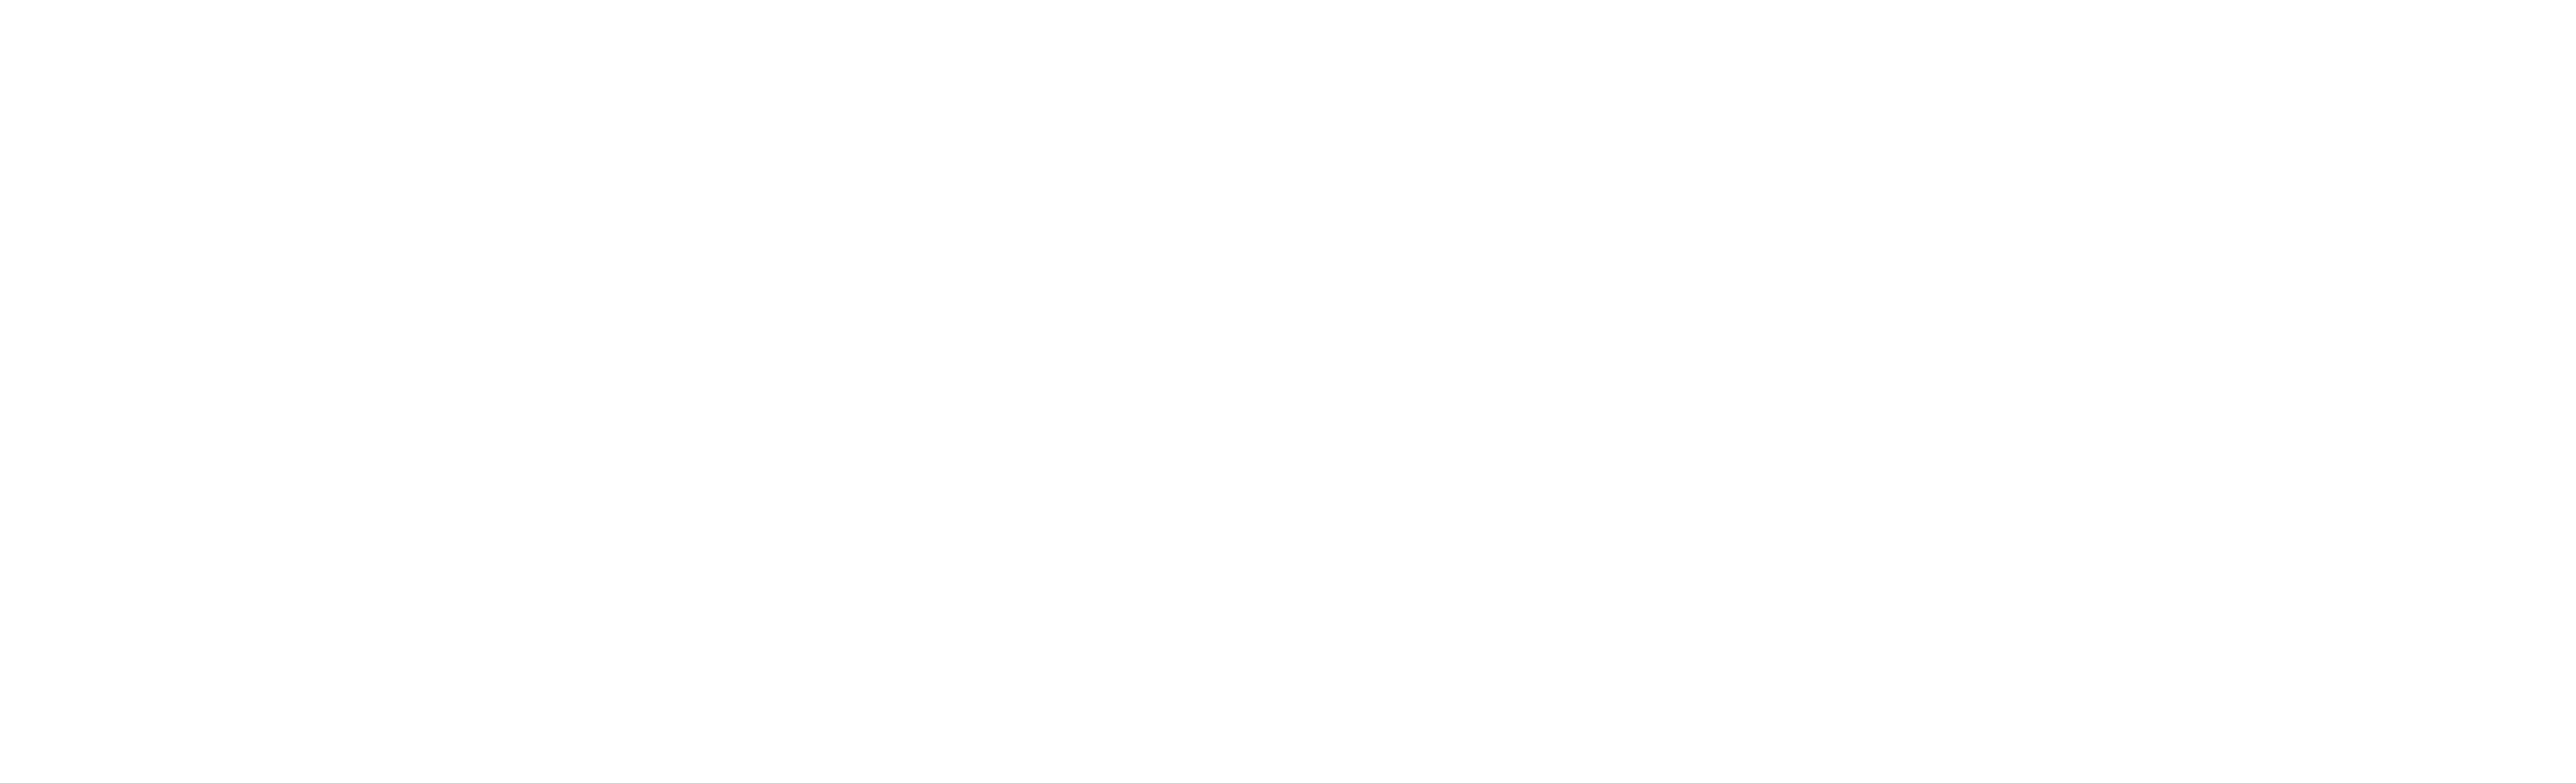 Michigan Intl Speedway - Michigan Speedway Logo Png (2638x802), Png Download